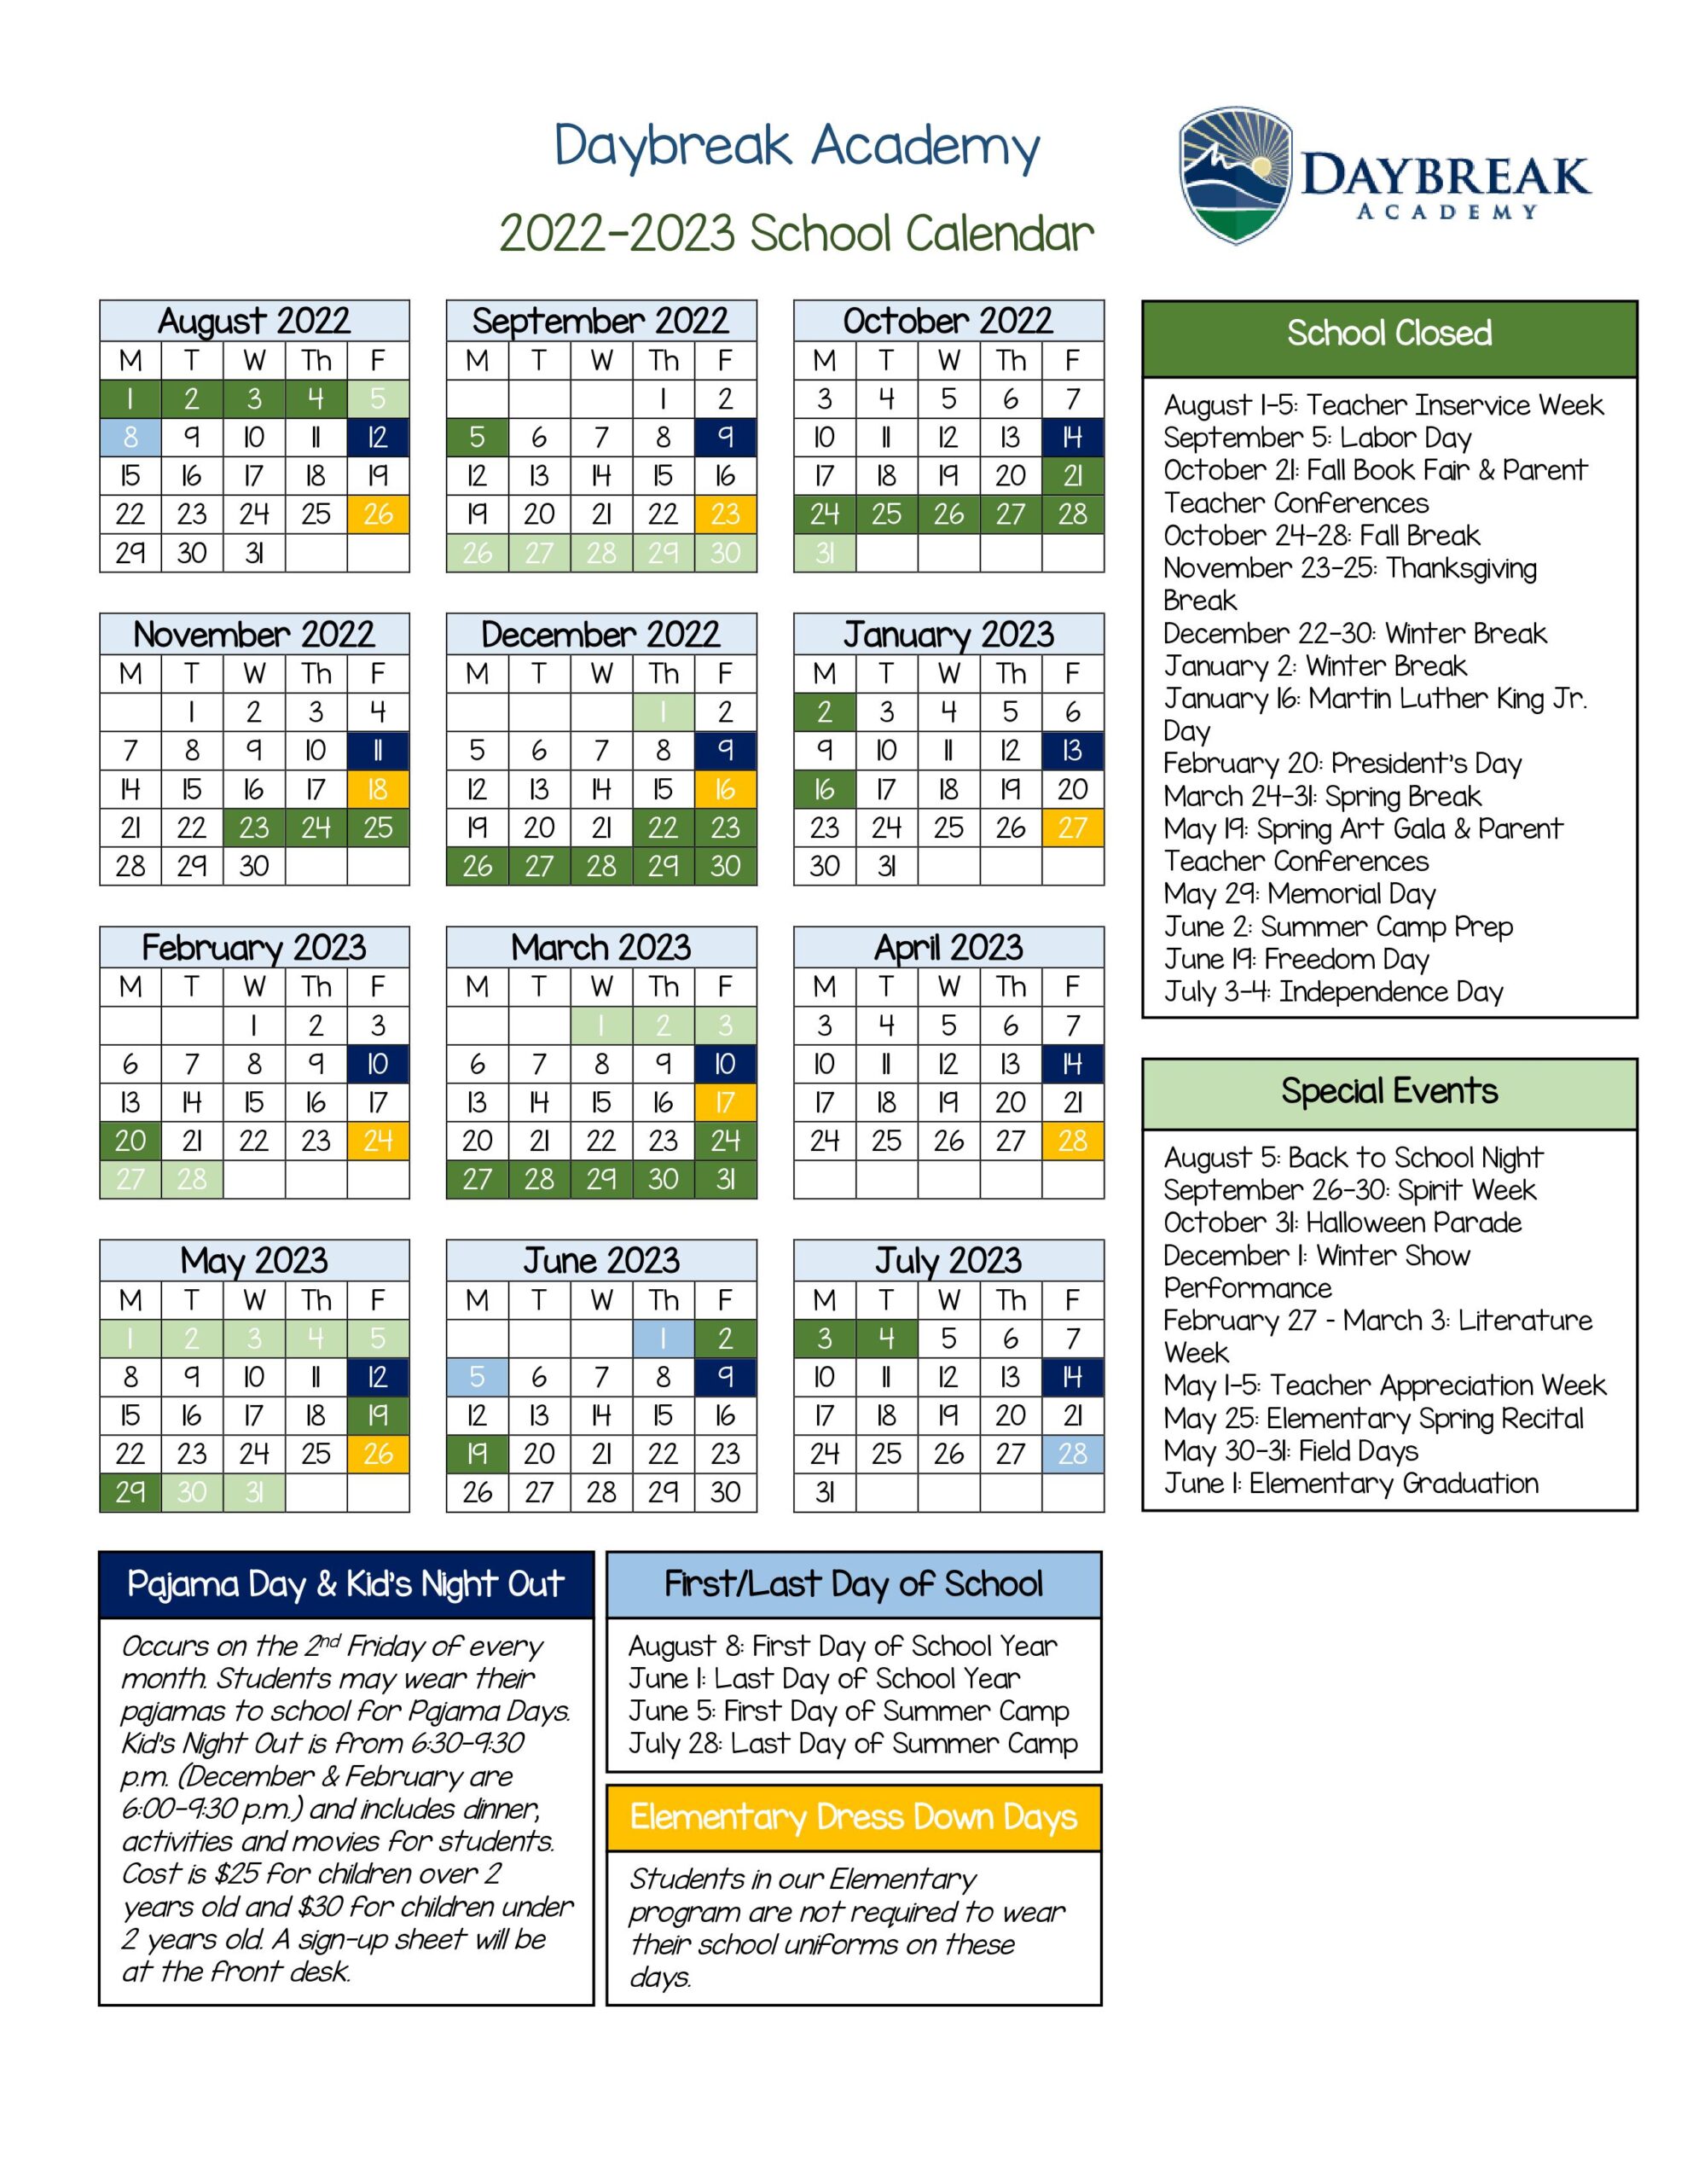 DA Calendar 22-23